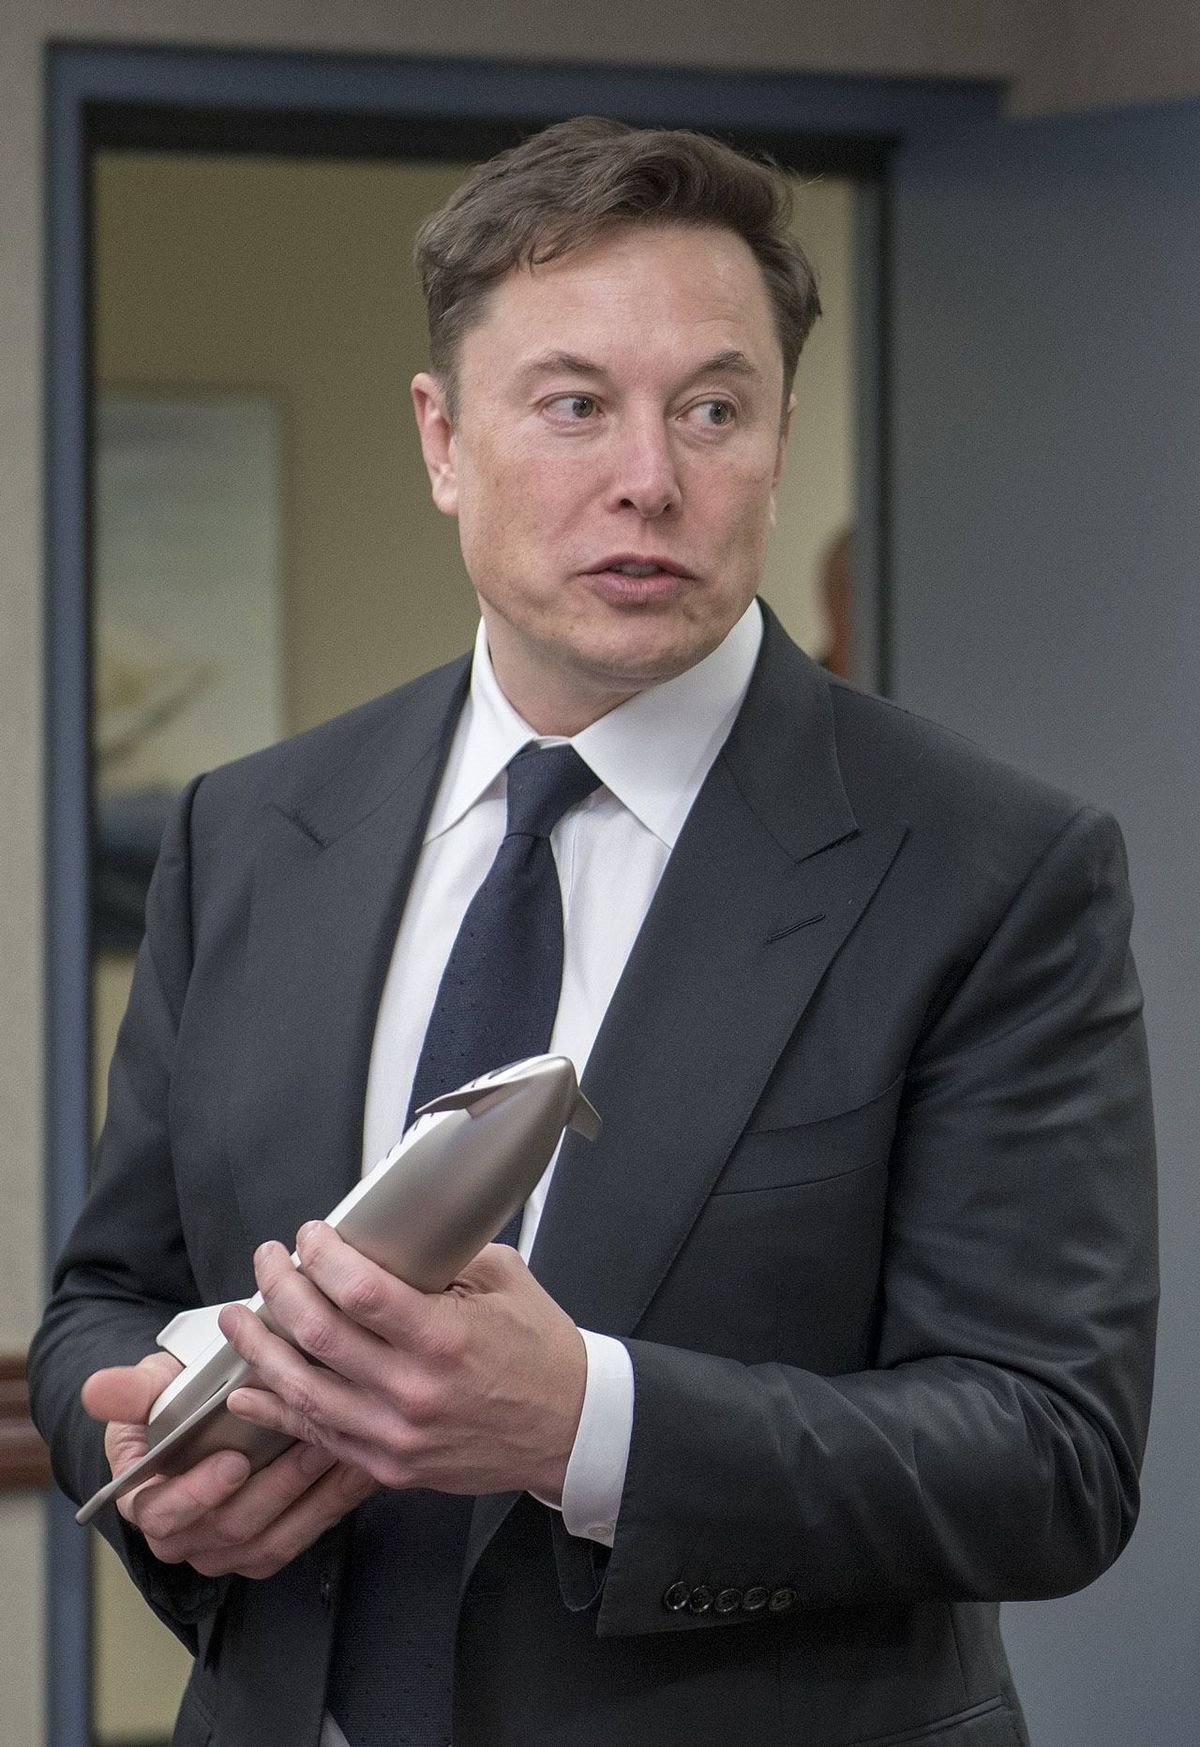 2019年4月15日、SpaceXの「スターシップ」の将来の機能について説明している、イーロン・マスク氏